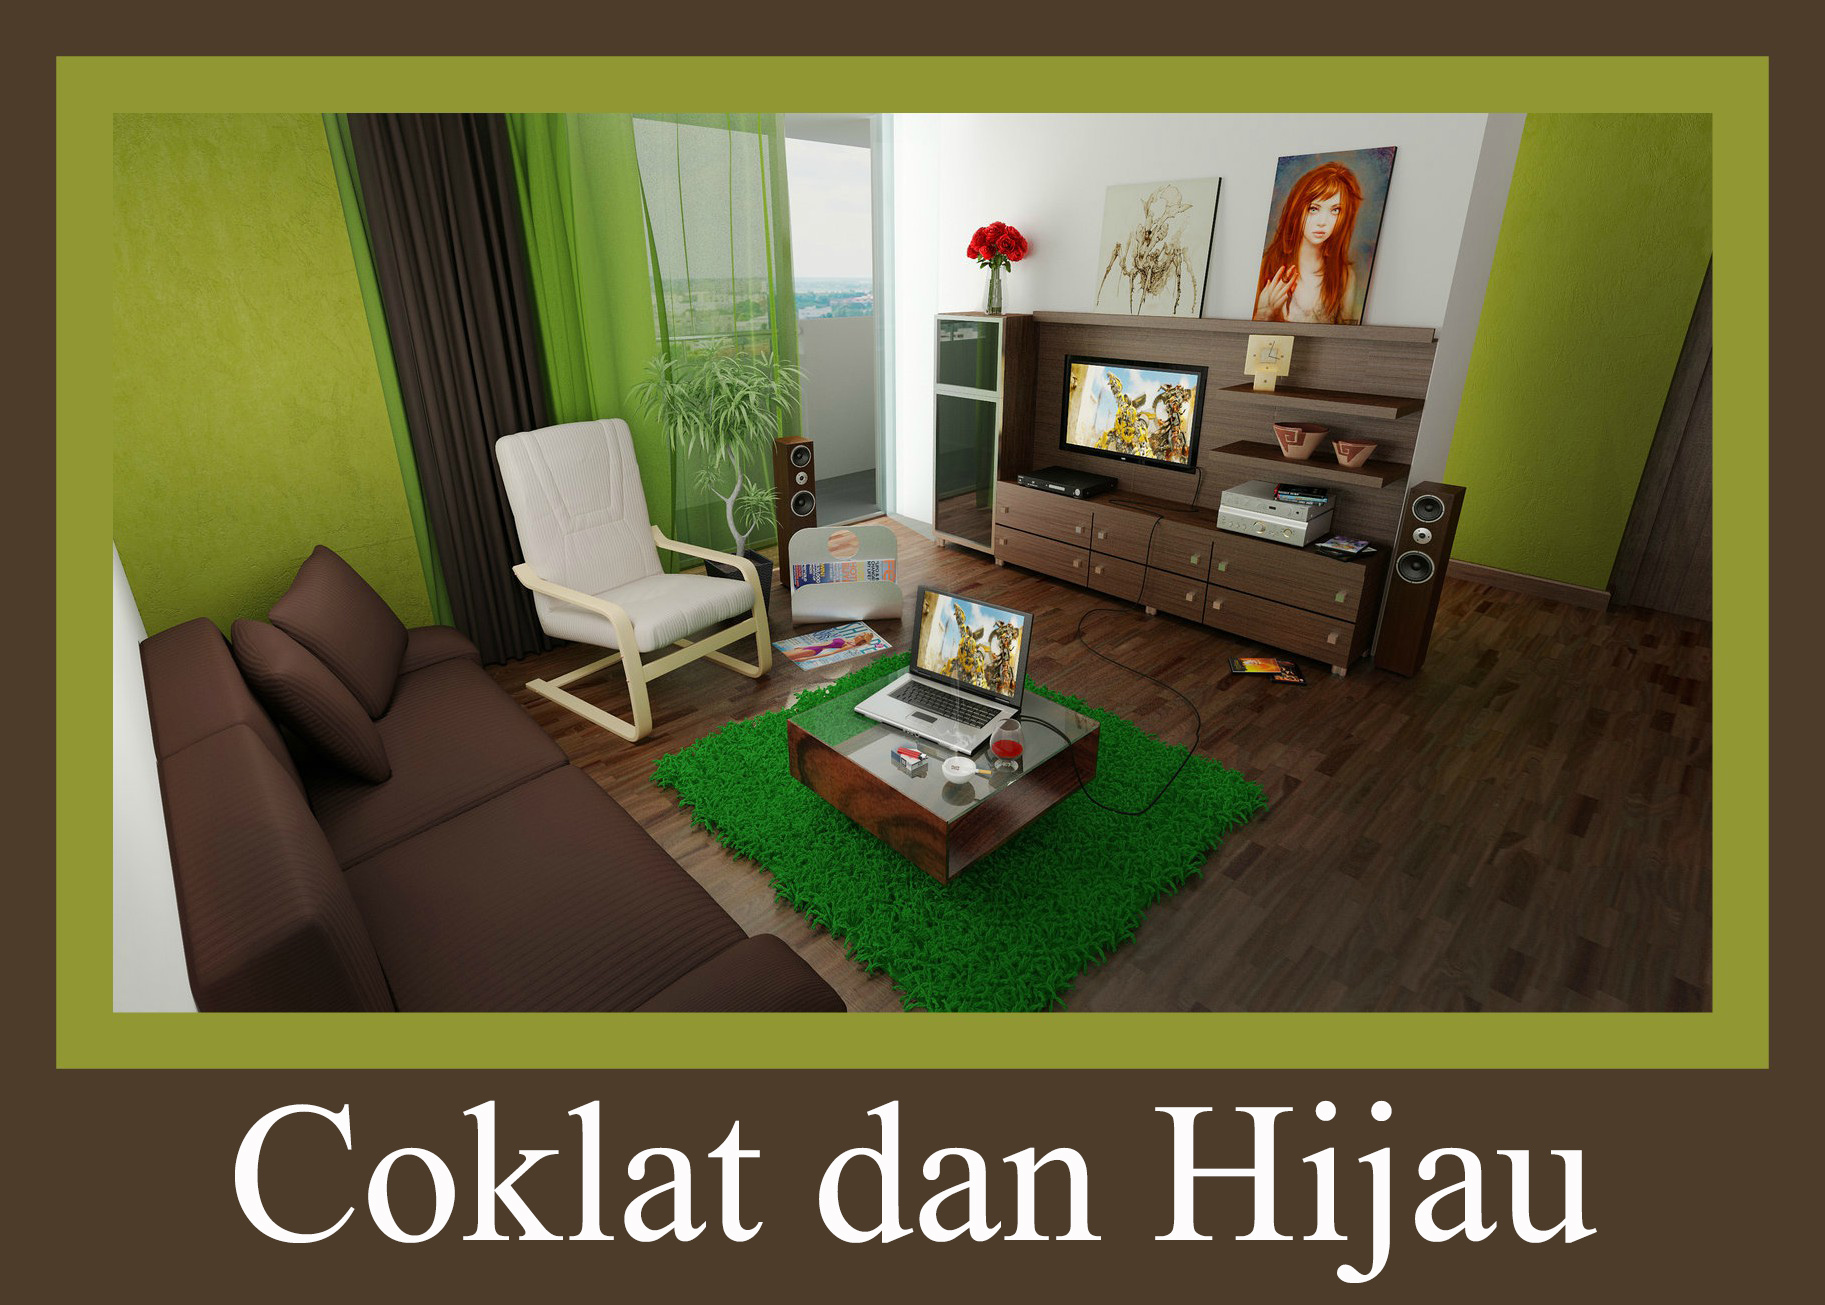 carta da parati warna coklat,soggiorno,camera,mobilia,verde,interior design